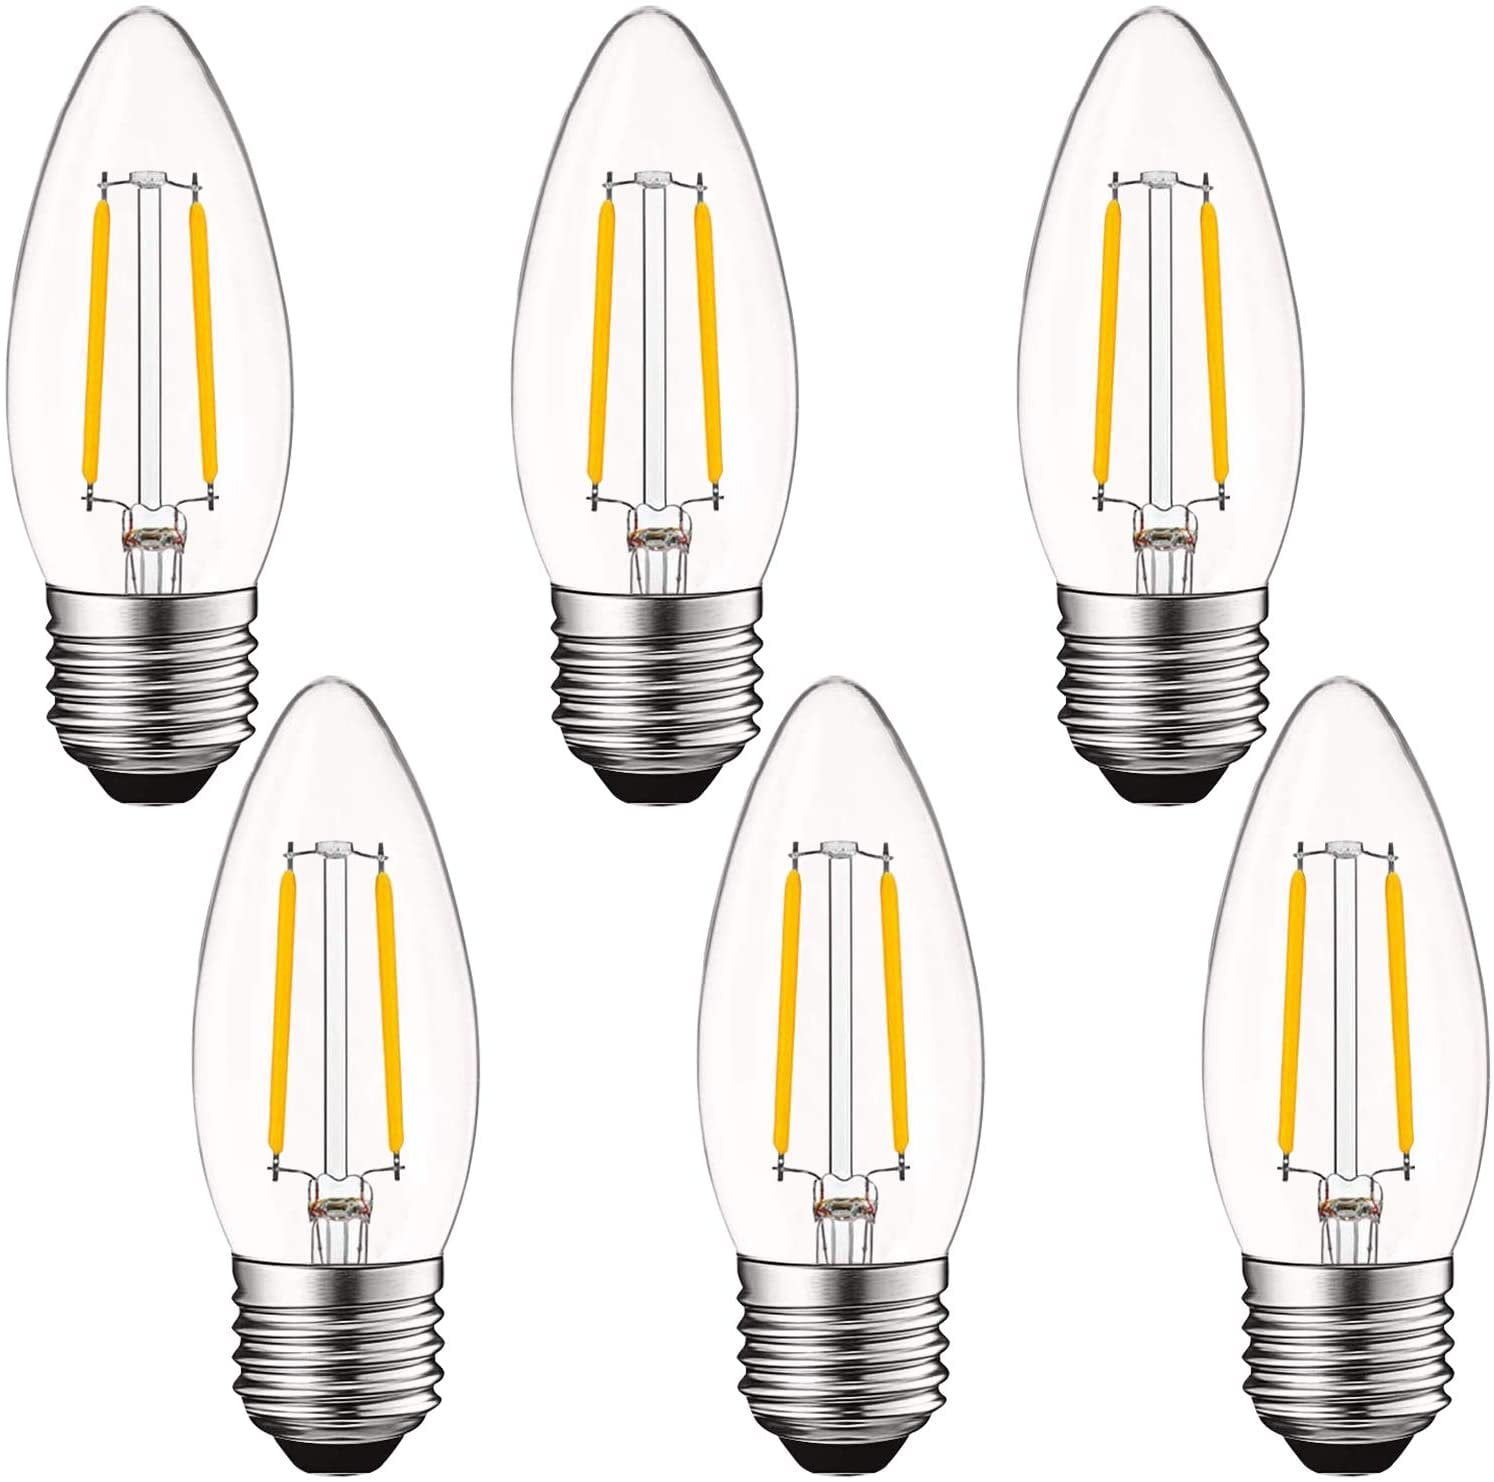 Luxrite LED Chandelier Light Bulbs E26, 40 Watt Equivalent, 2700K Warm White, Dimmable, Torpedo